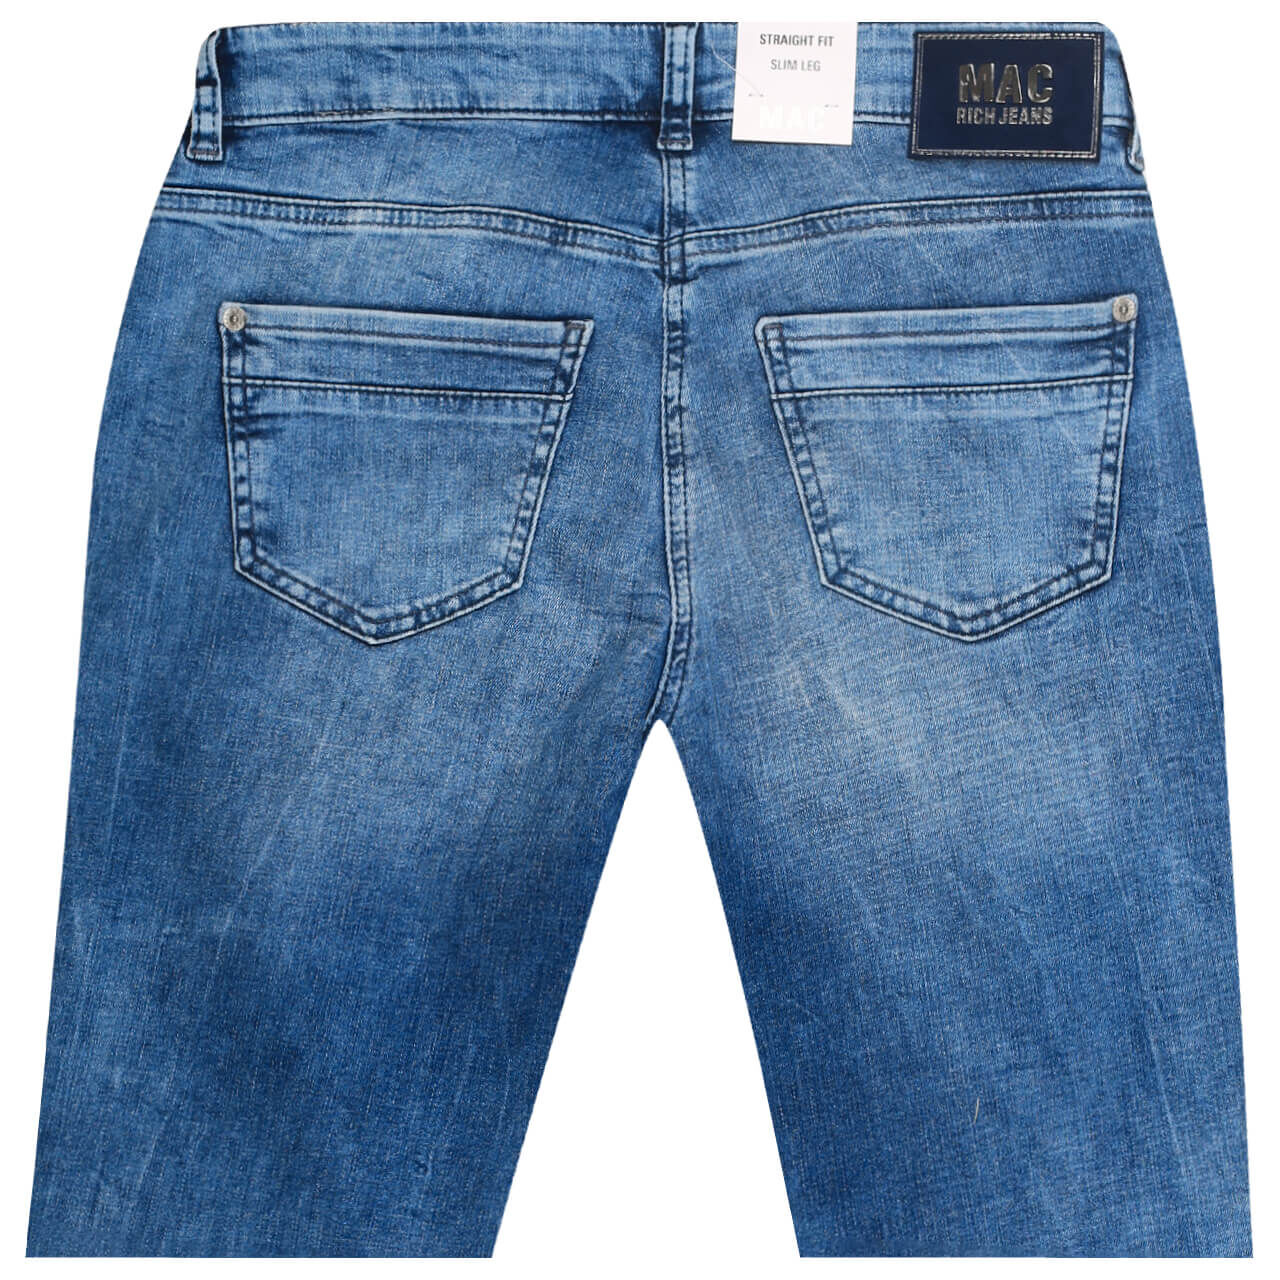 MAC Jeans Rich Slim für Damen in Blau verwaschen, FarbNr.: D434